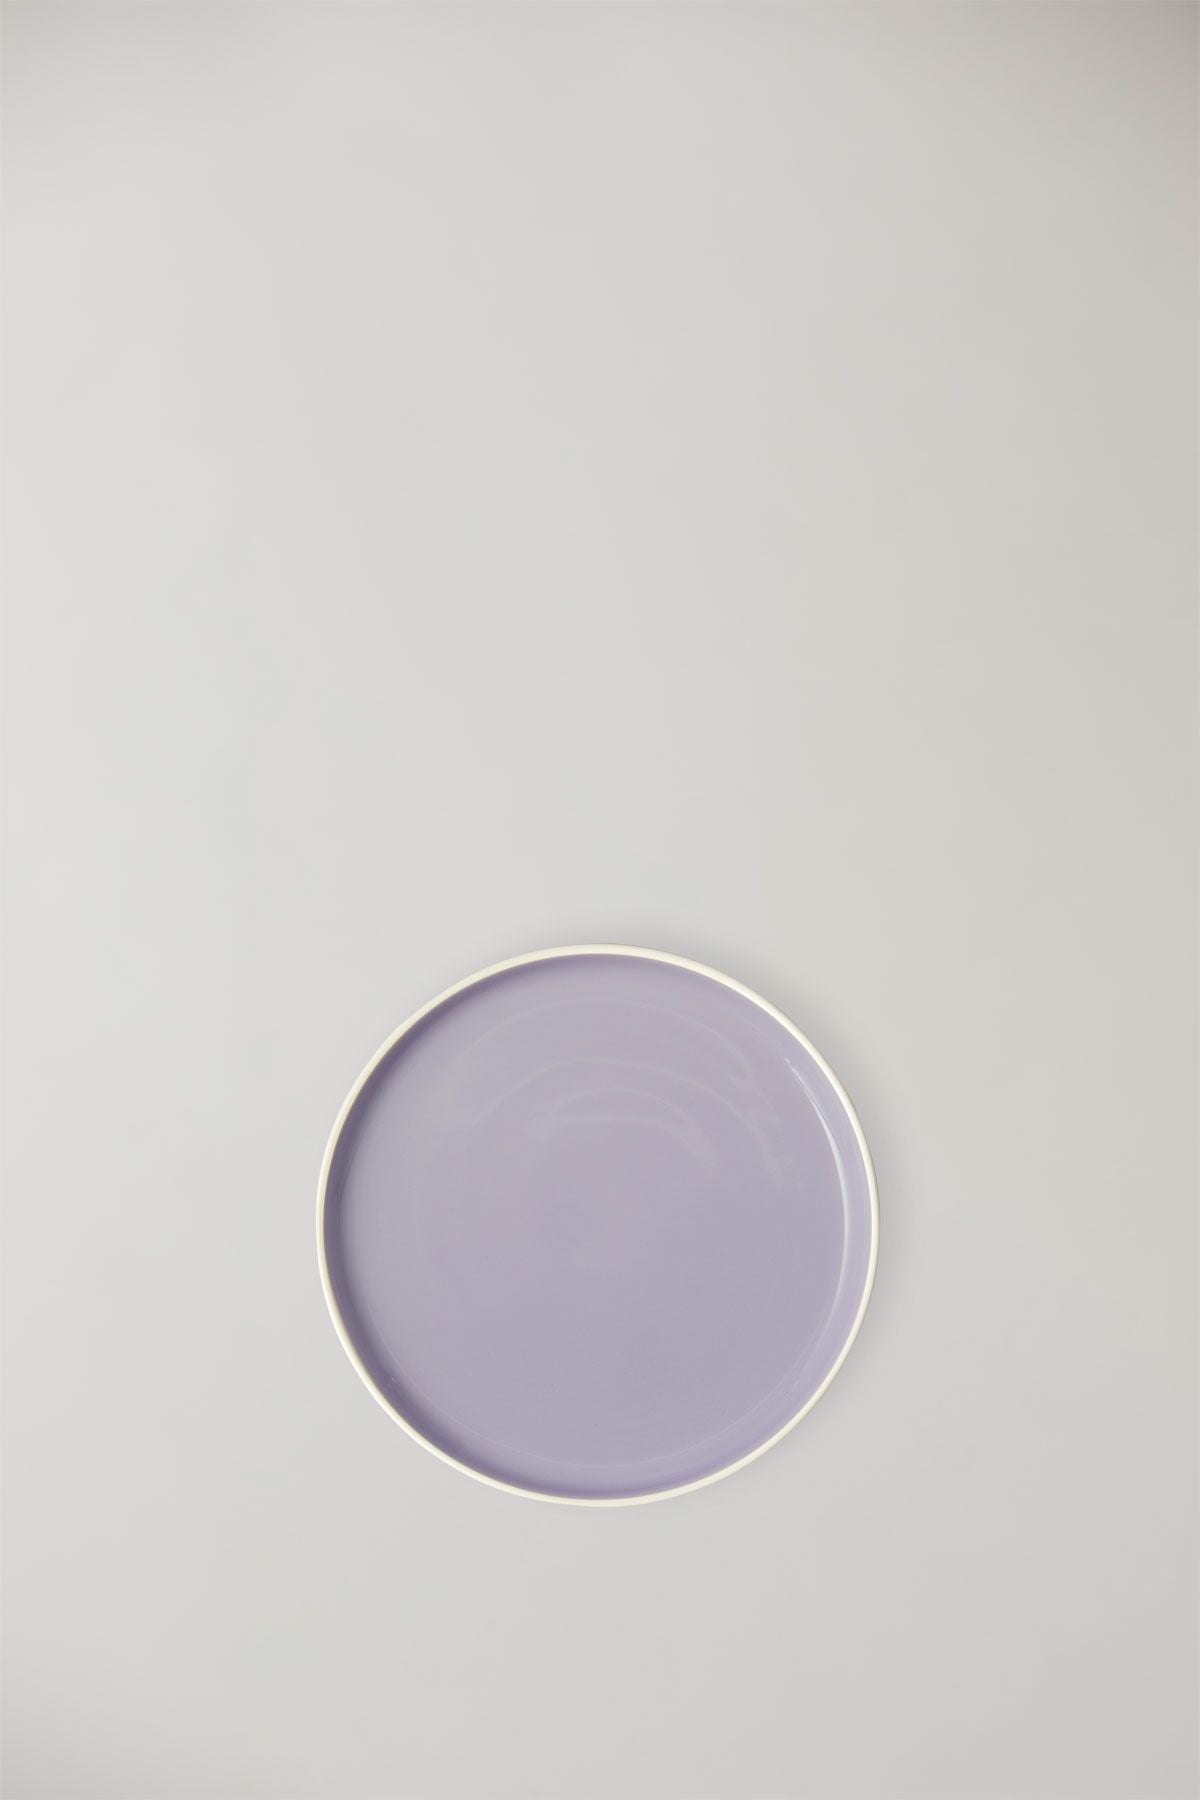 Studio sur le plat de service argileux, ivoire / violet léger